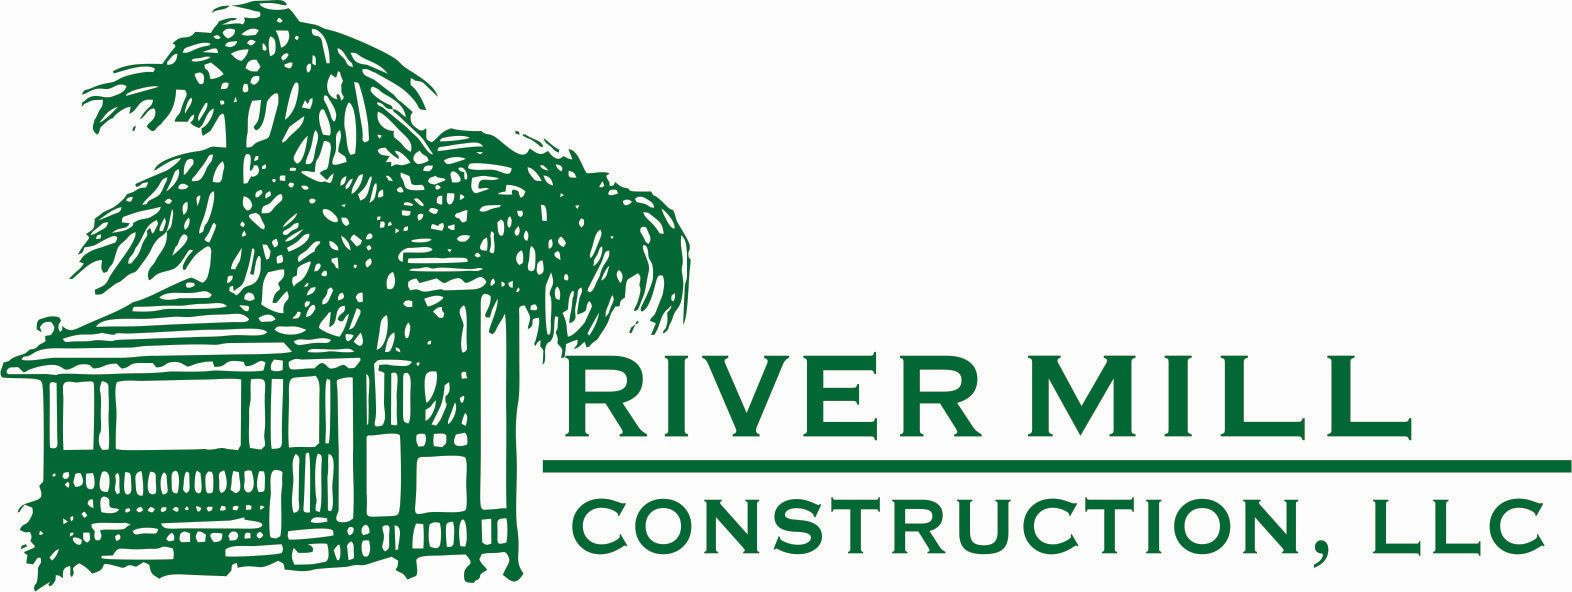 River Mill Construction, LLC